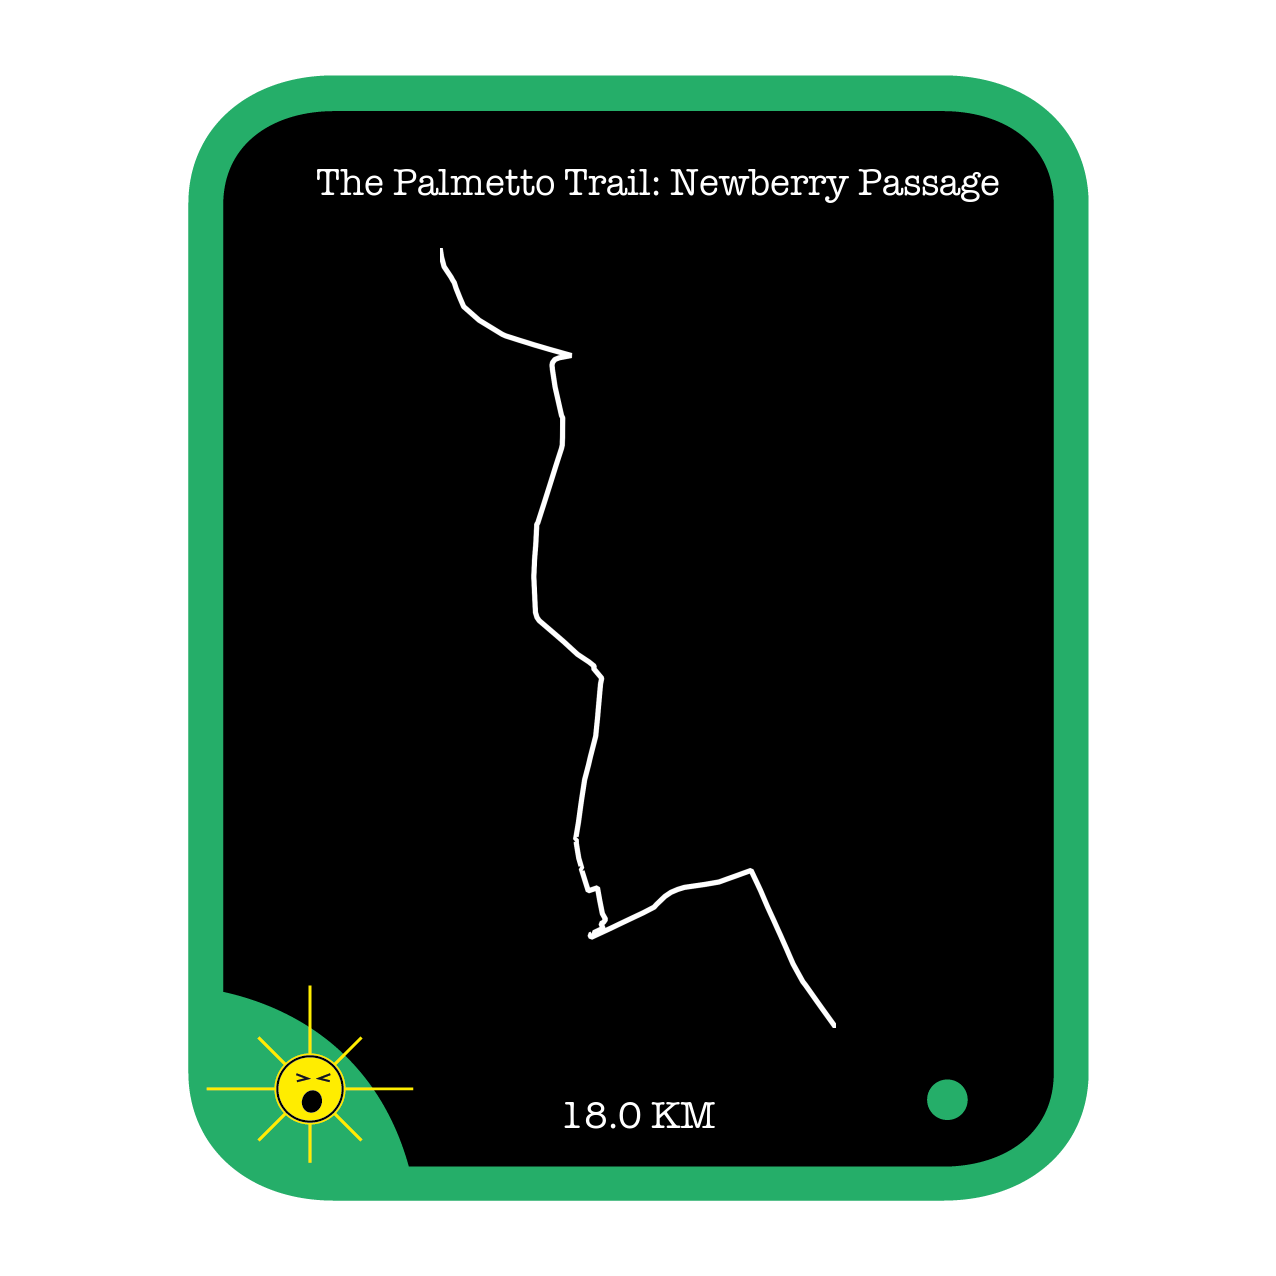 The Palmetto Trail: Newberry Passage